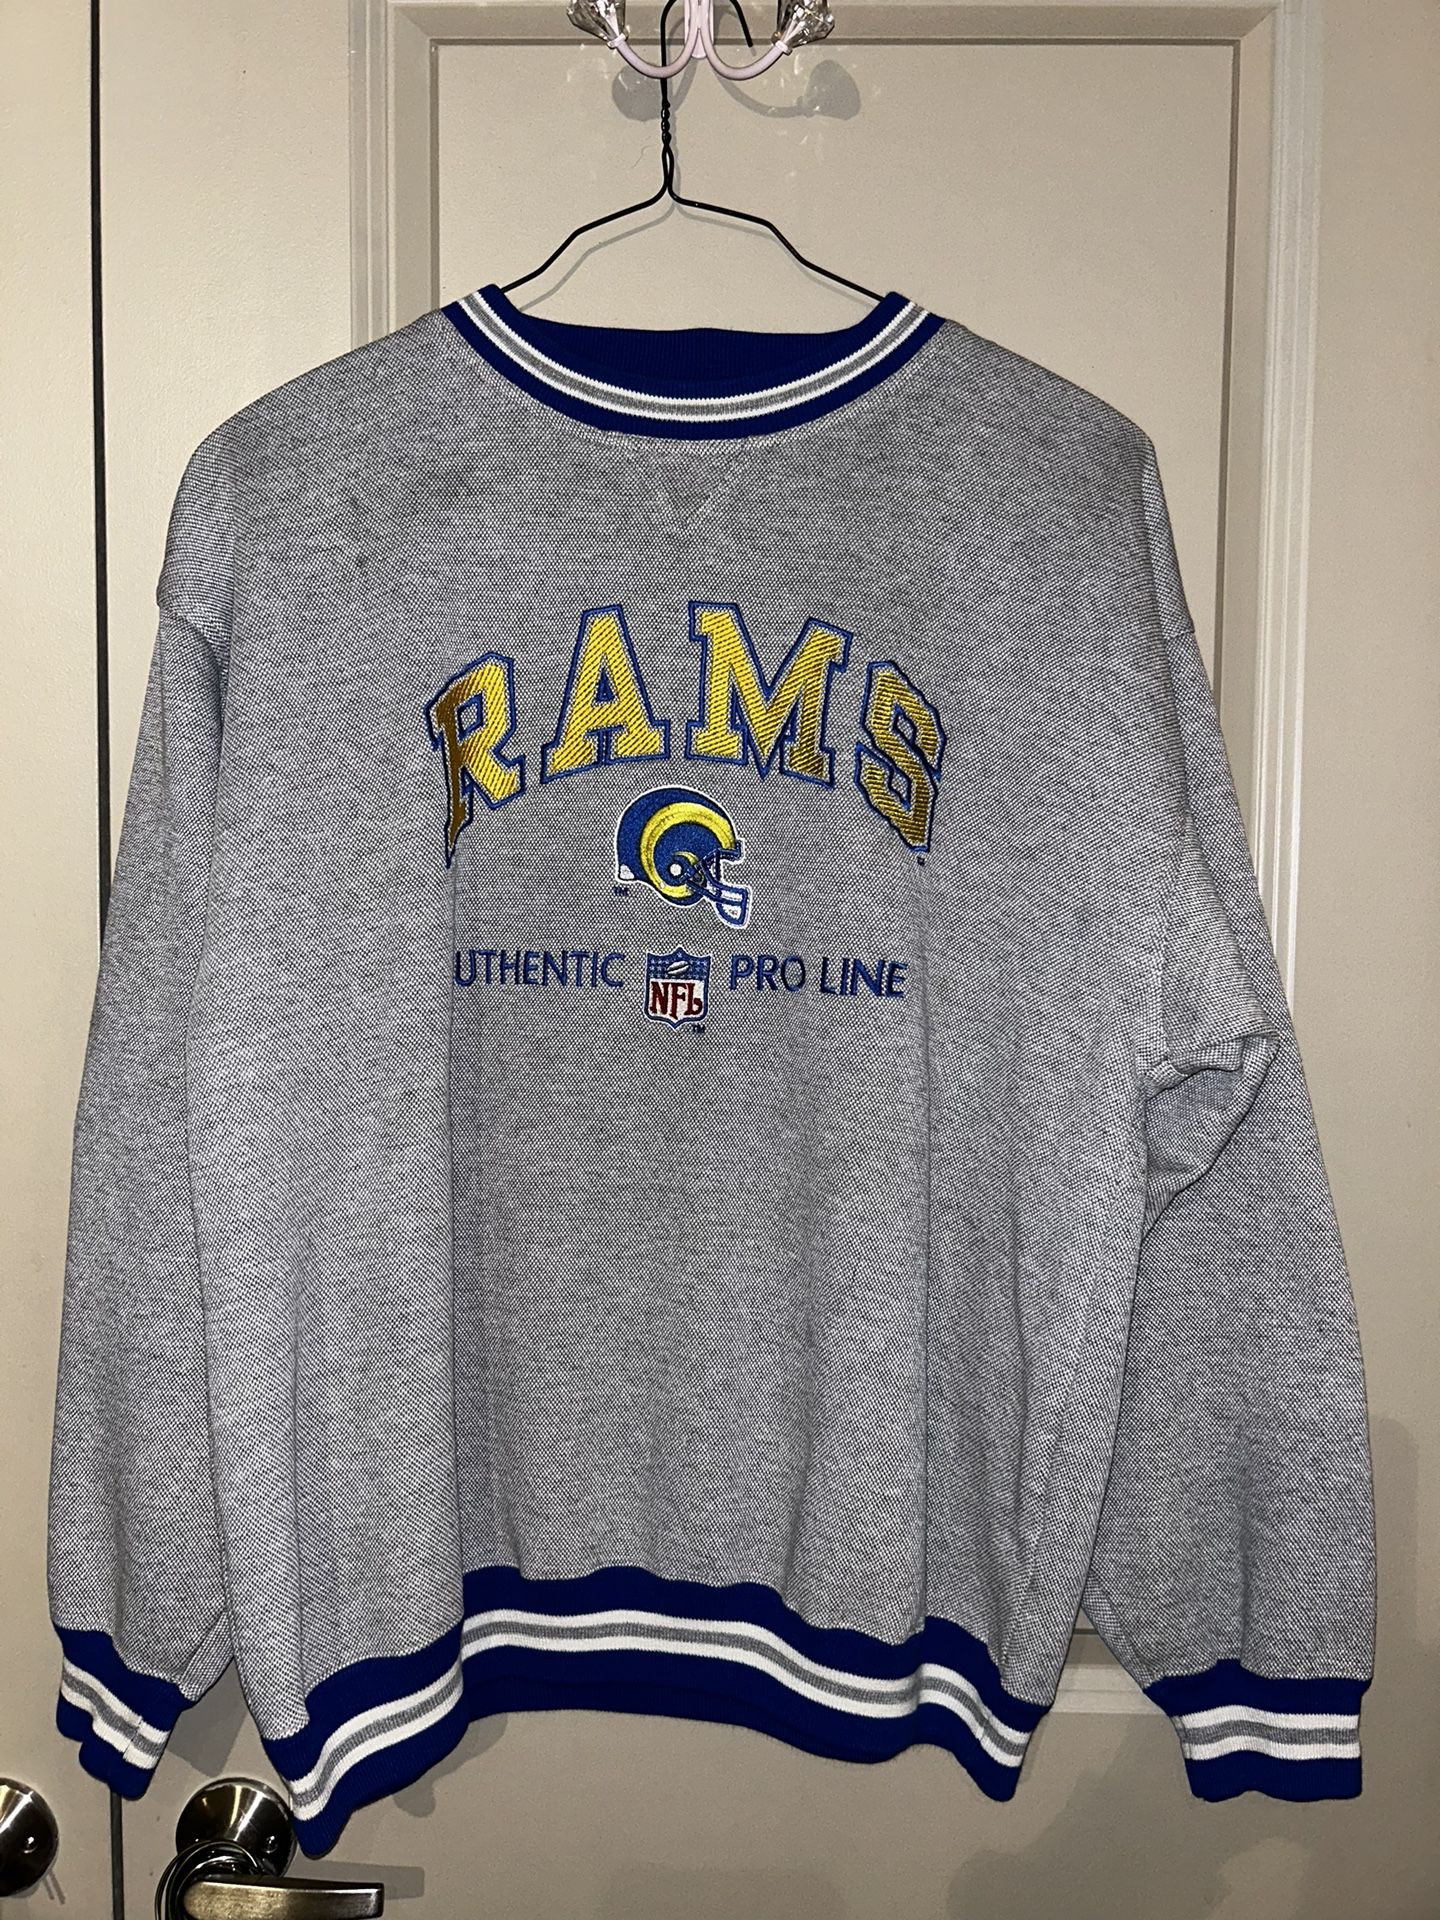 Vintage 90s Los Angeles Rams Crewneck Sz. XL